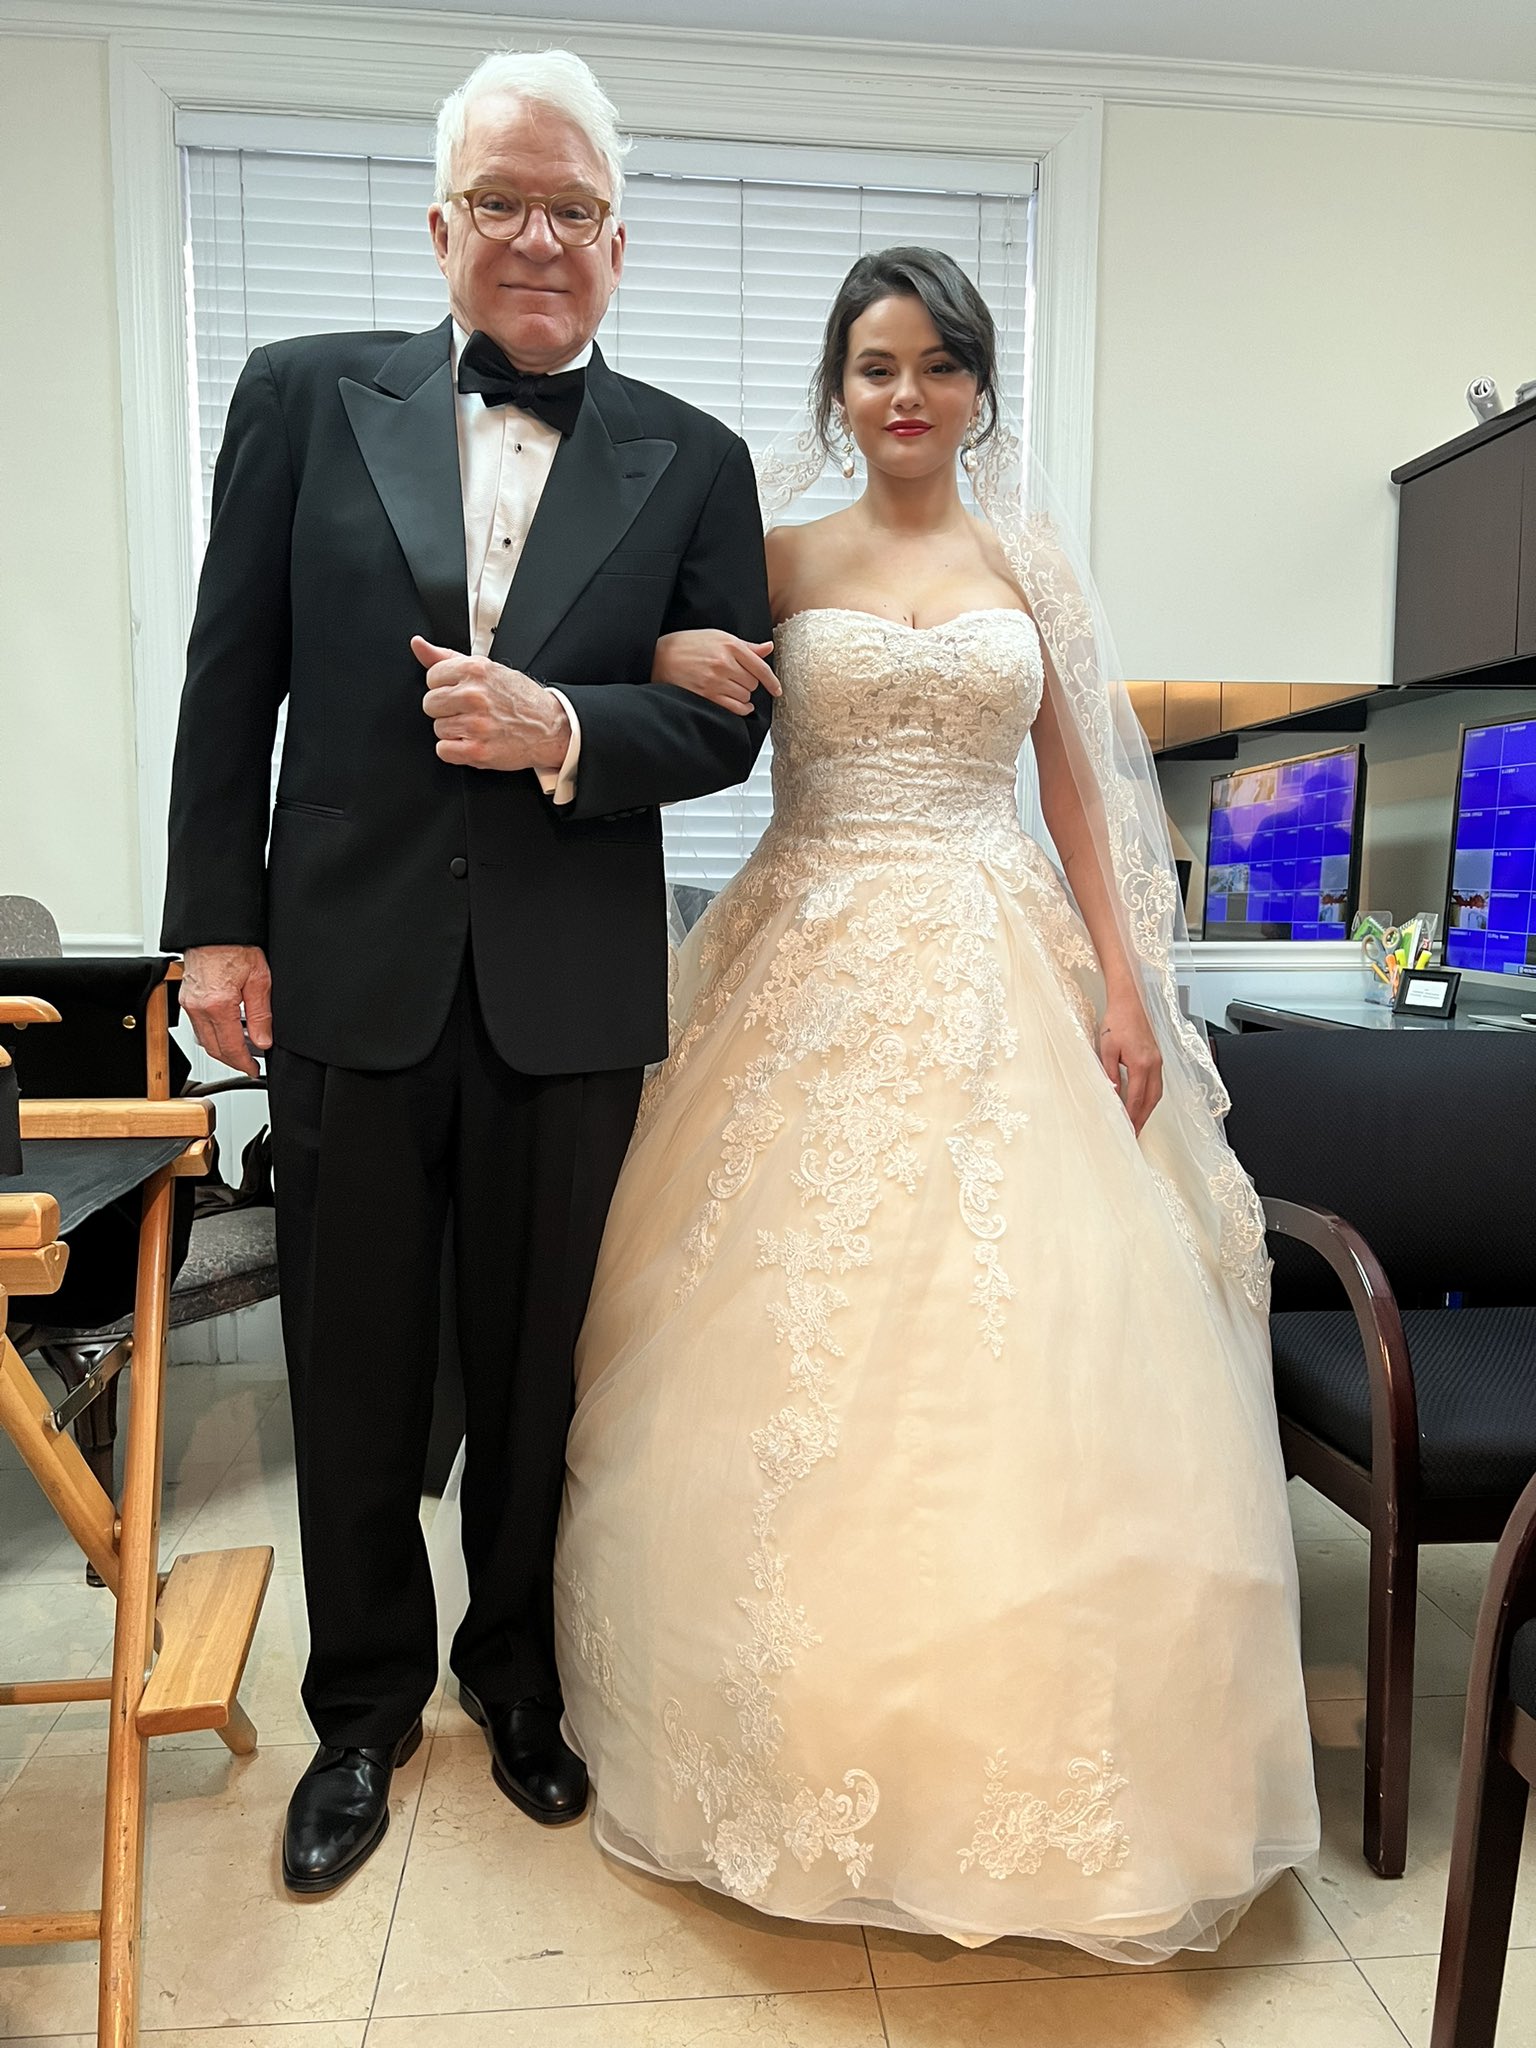 "Adivinen lo que pasó", publicó Steve Martin en esta foto con Selena Gomez vestida de novia, por las grabaciones de "Only Murders in the Building", tercera temporada. (Steve Martin Twitter)